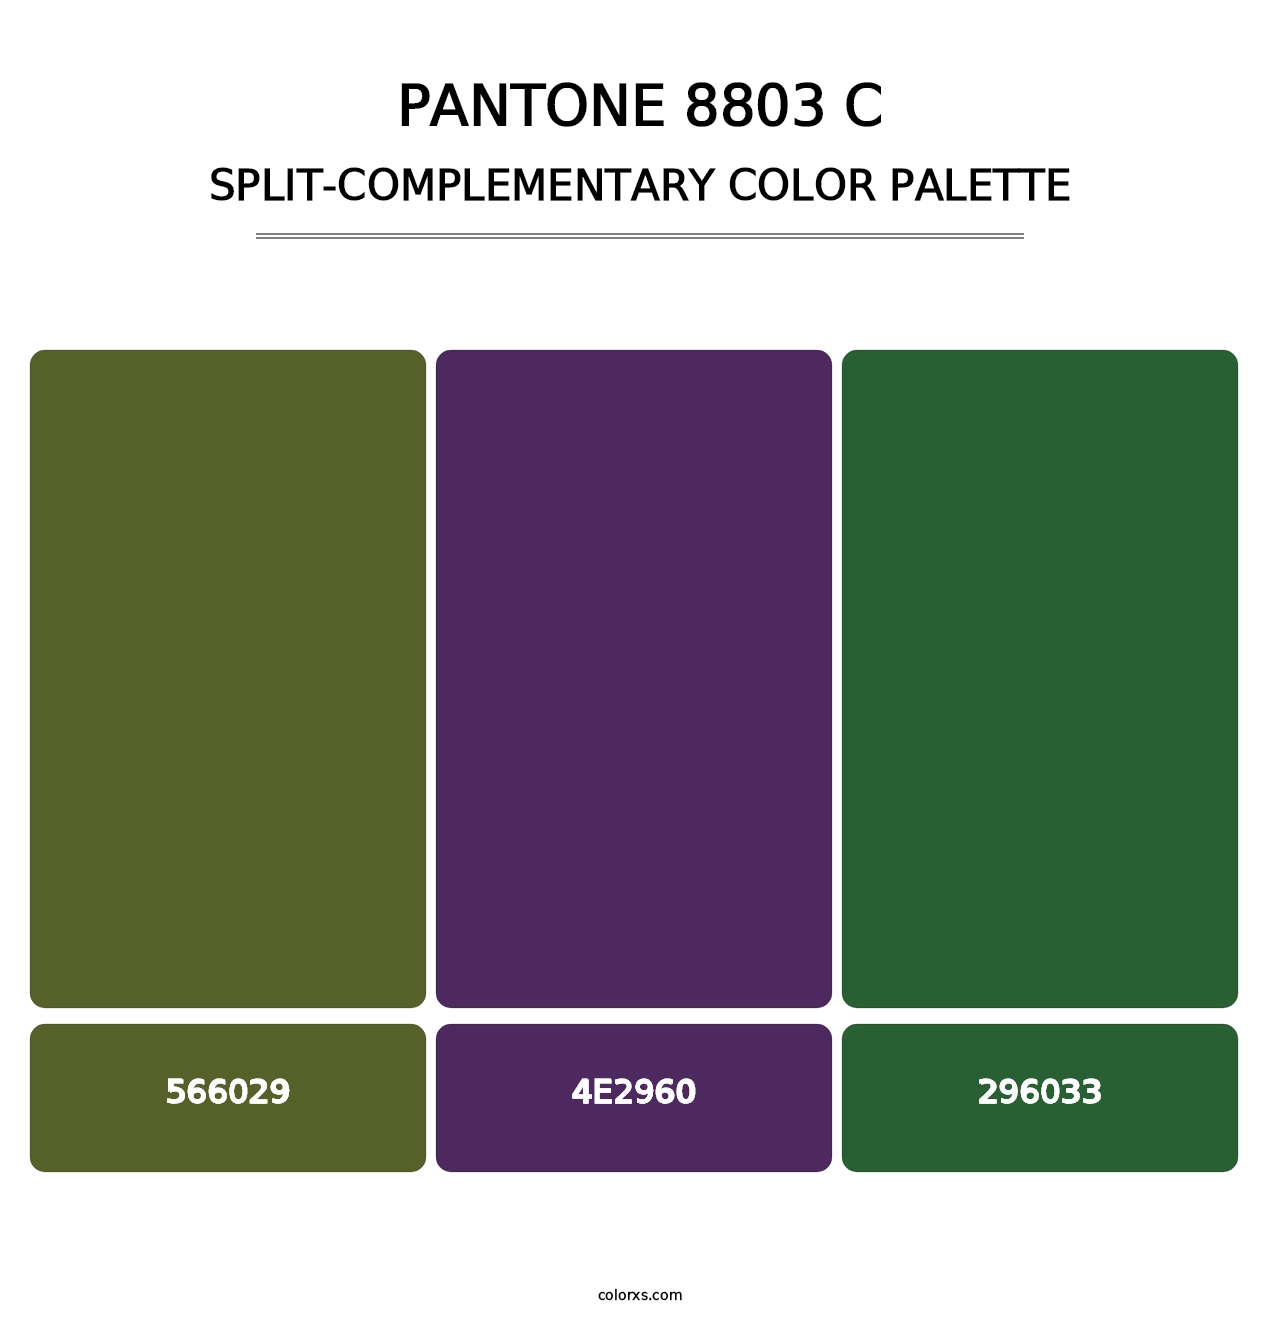 PANTONE 8803 C - Split-Complementary Color Palette